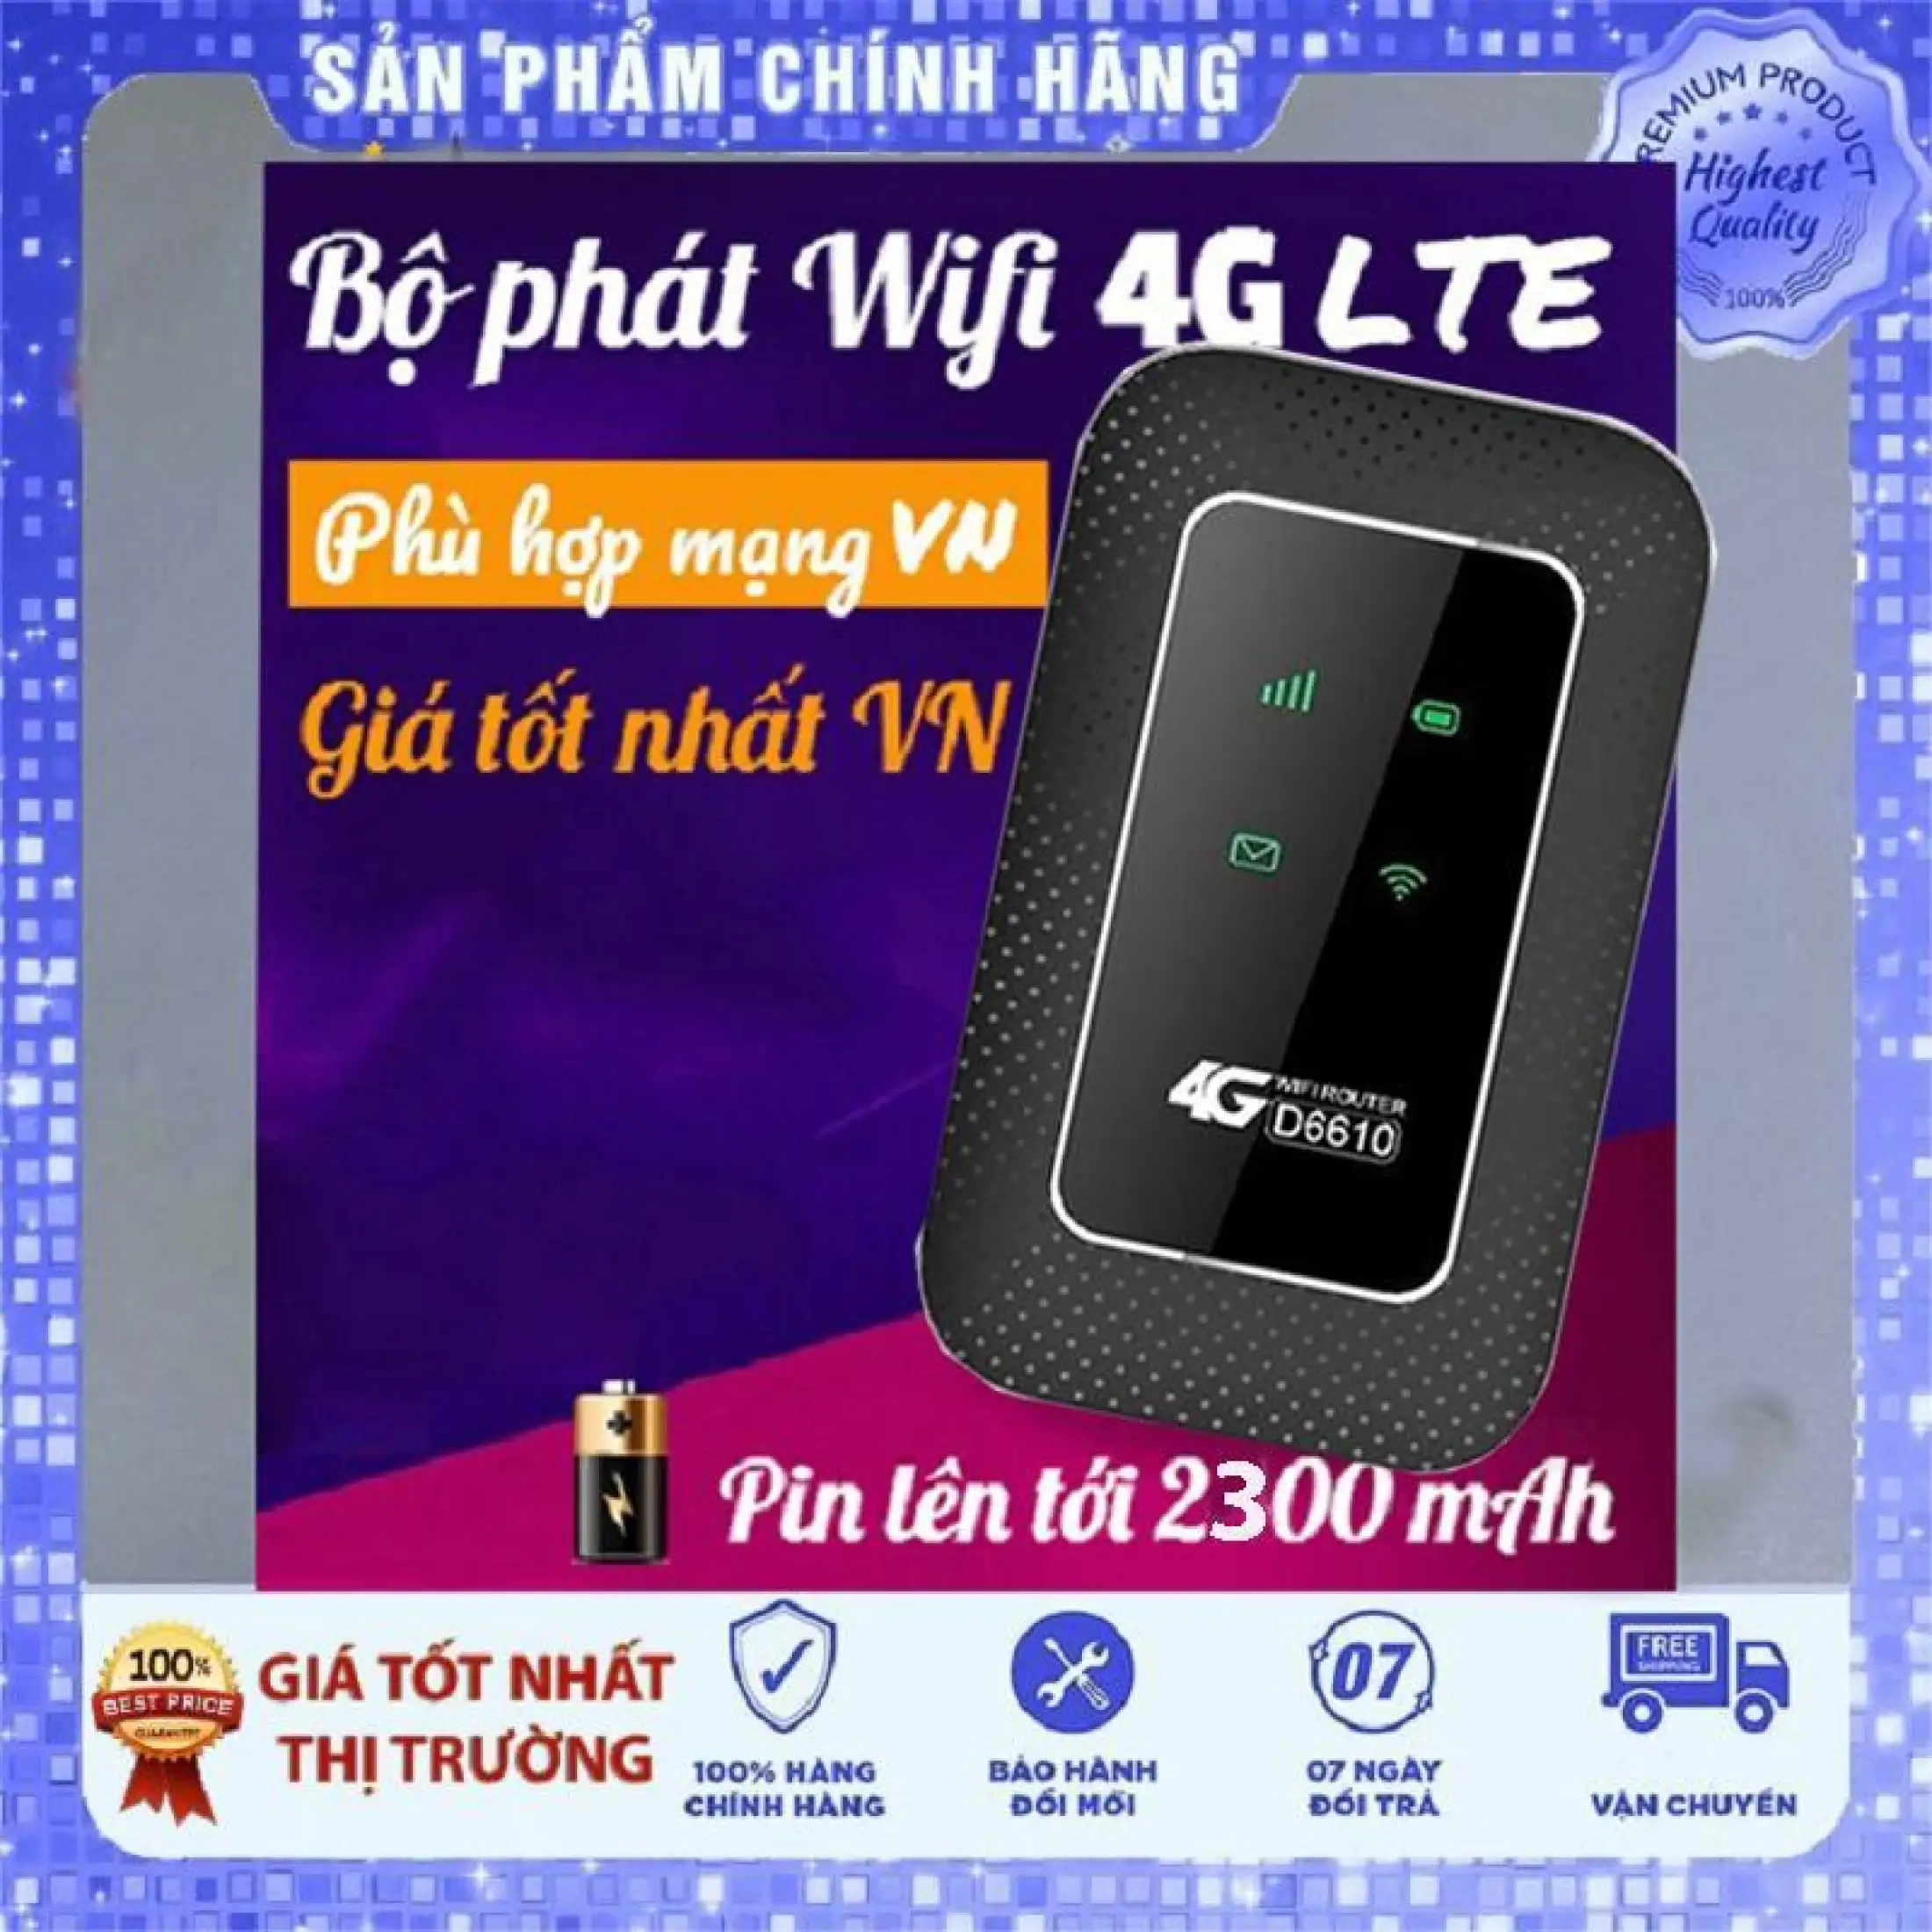 Bộ phát WiFi Router 4G VIETTEL D6610 - BẢO HÀNH 1 ĐỔI 1 từ MƯỜNG